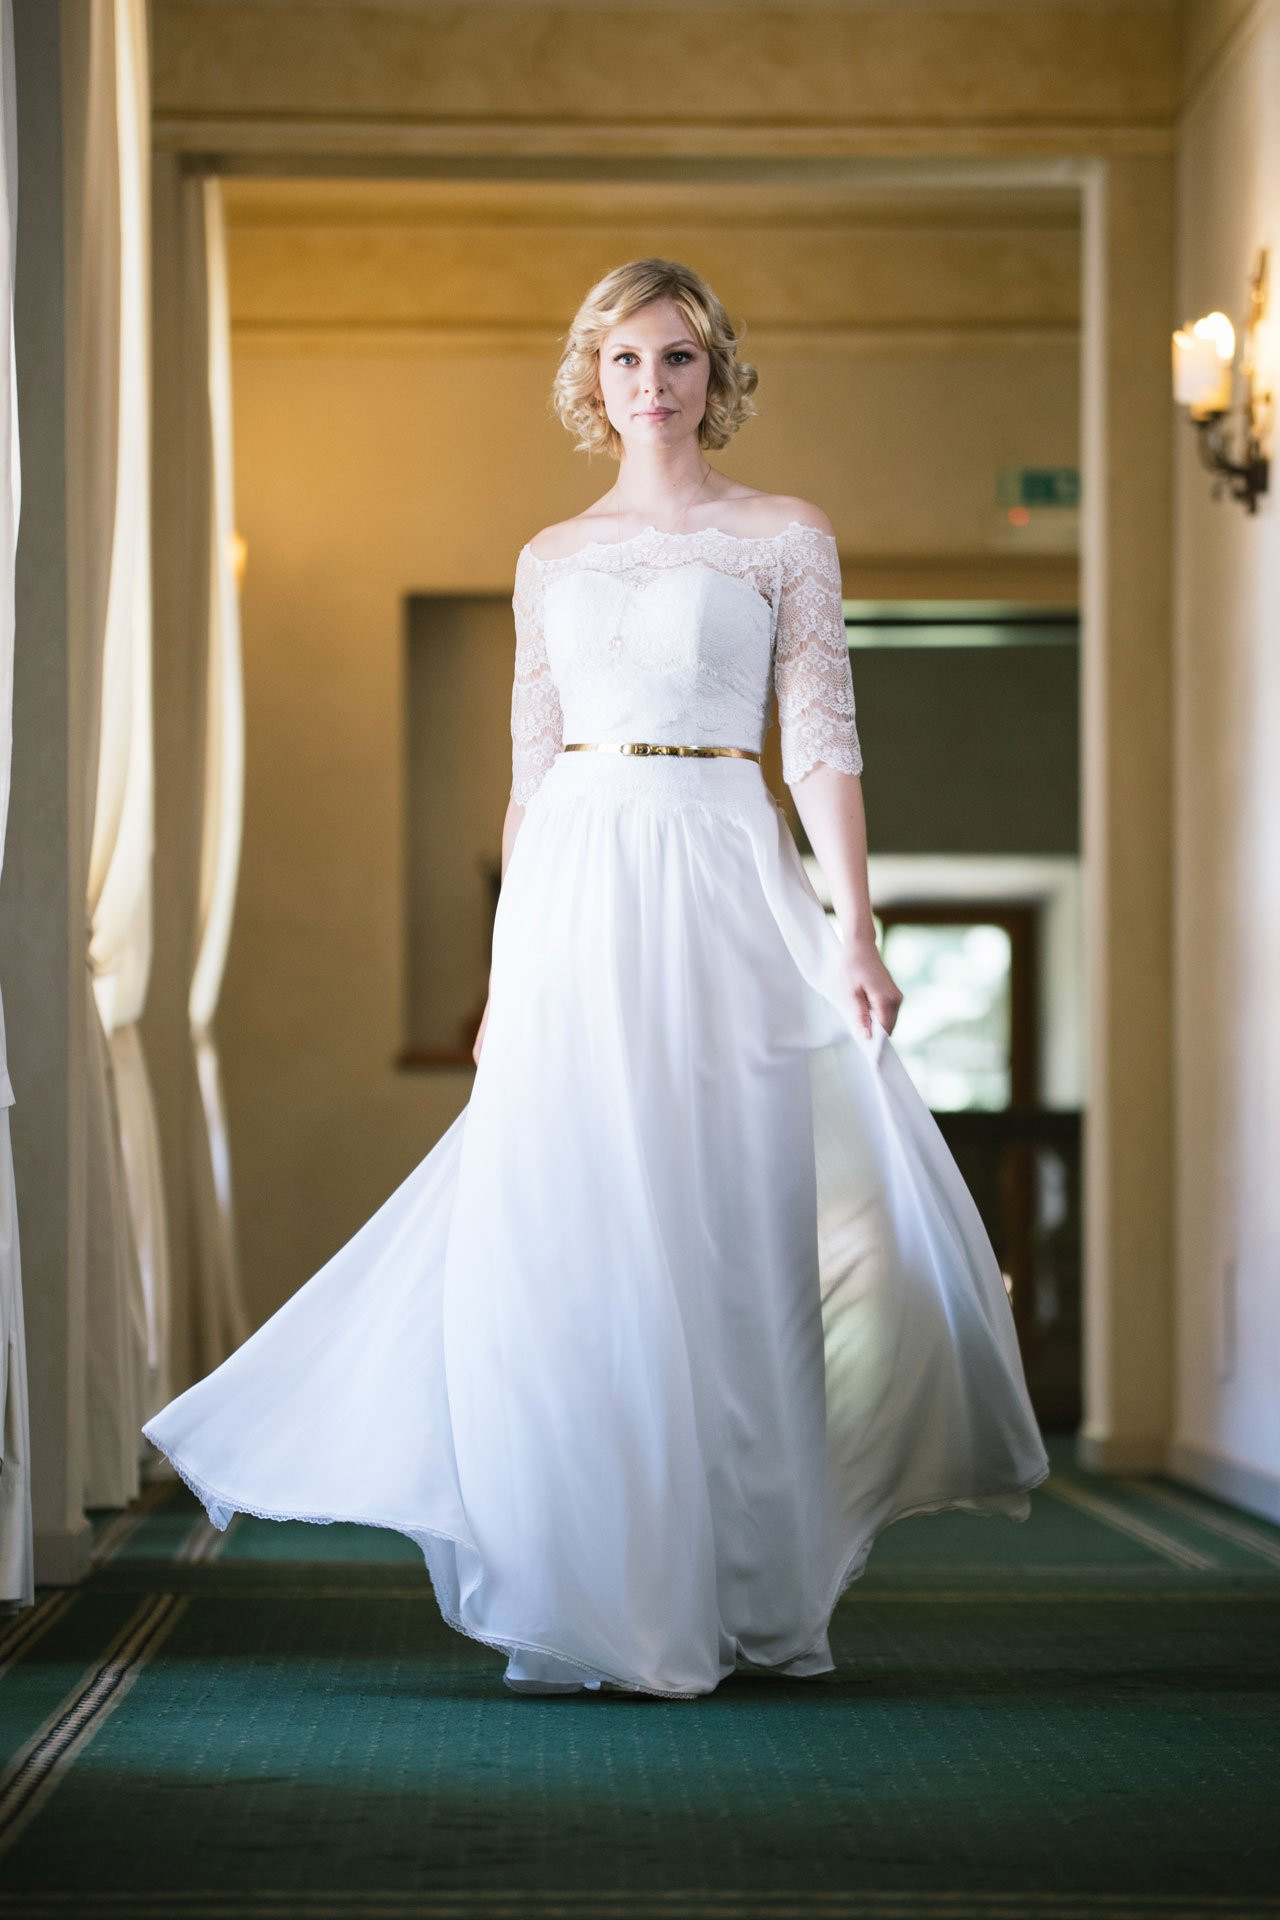 20Er Jahre Hochzeitskleid
 Brautkleid inspiriert vom 20er Jahre Stil – Vintage Kleid